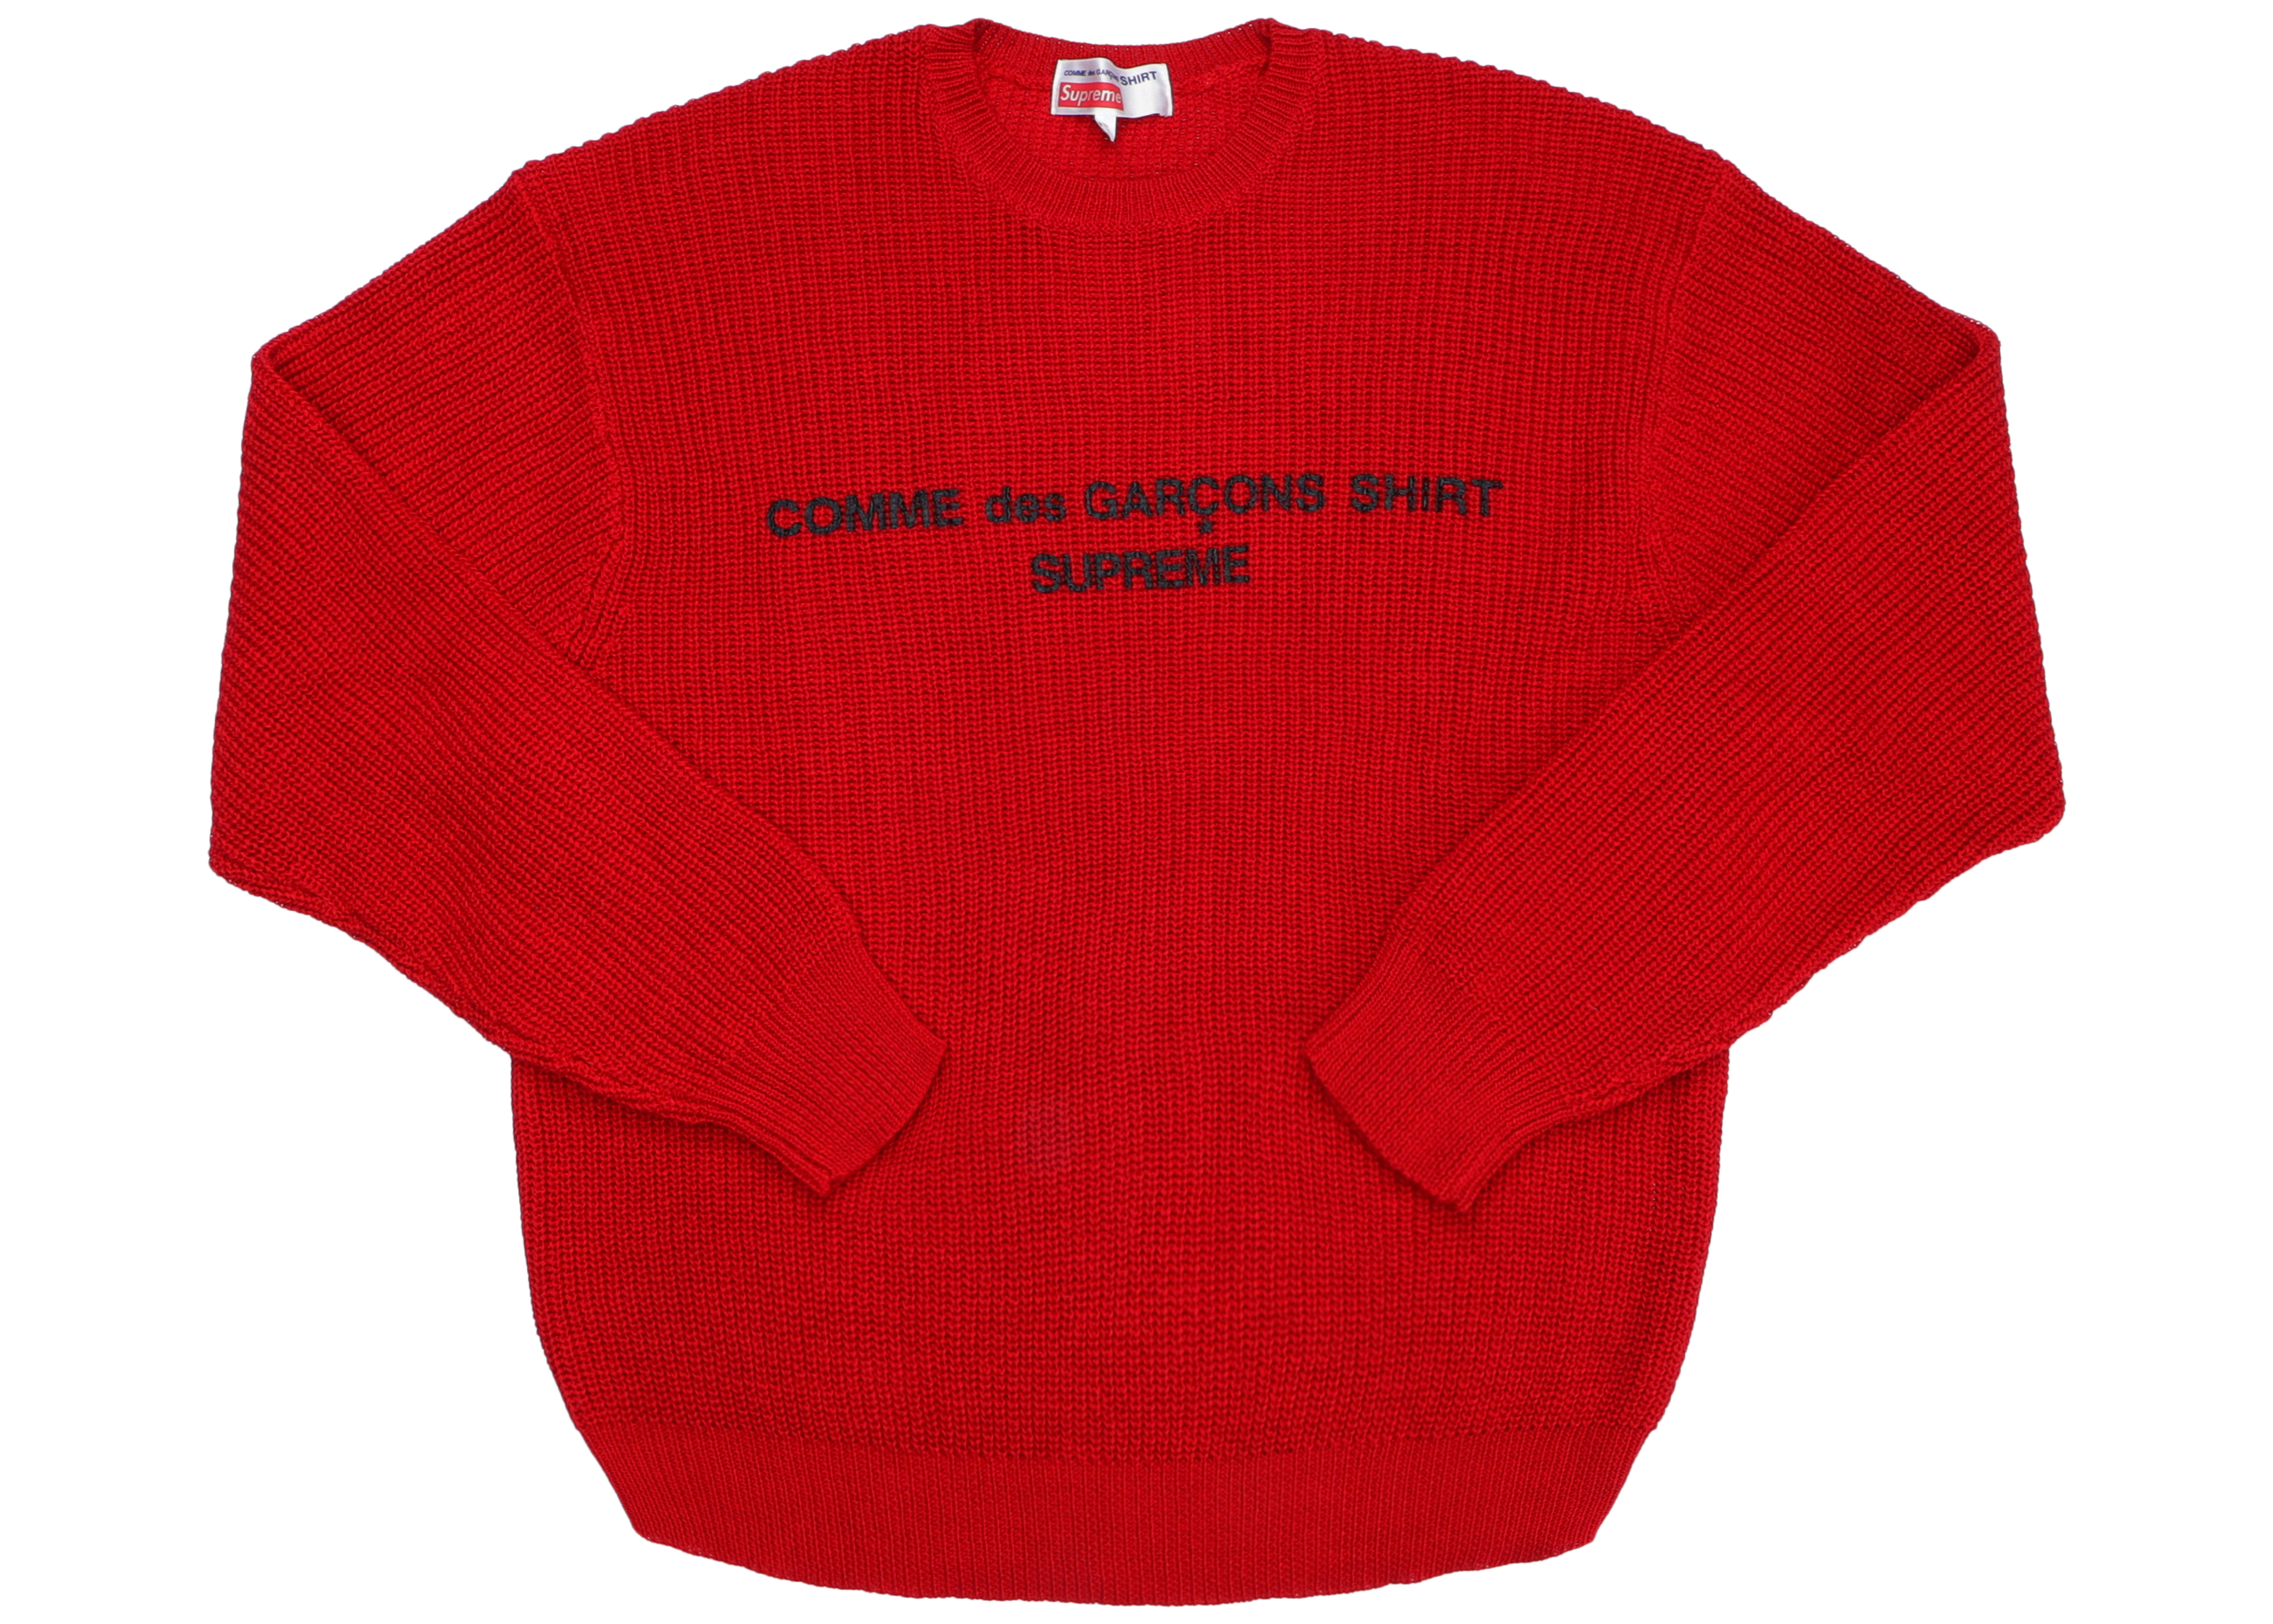 Supreme Comme des Garcons SHIRT Sweater Tan Men's - FW18 - US